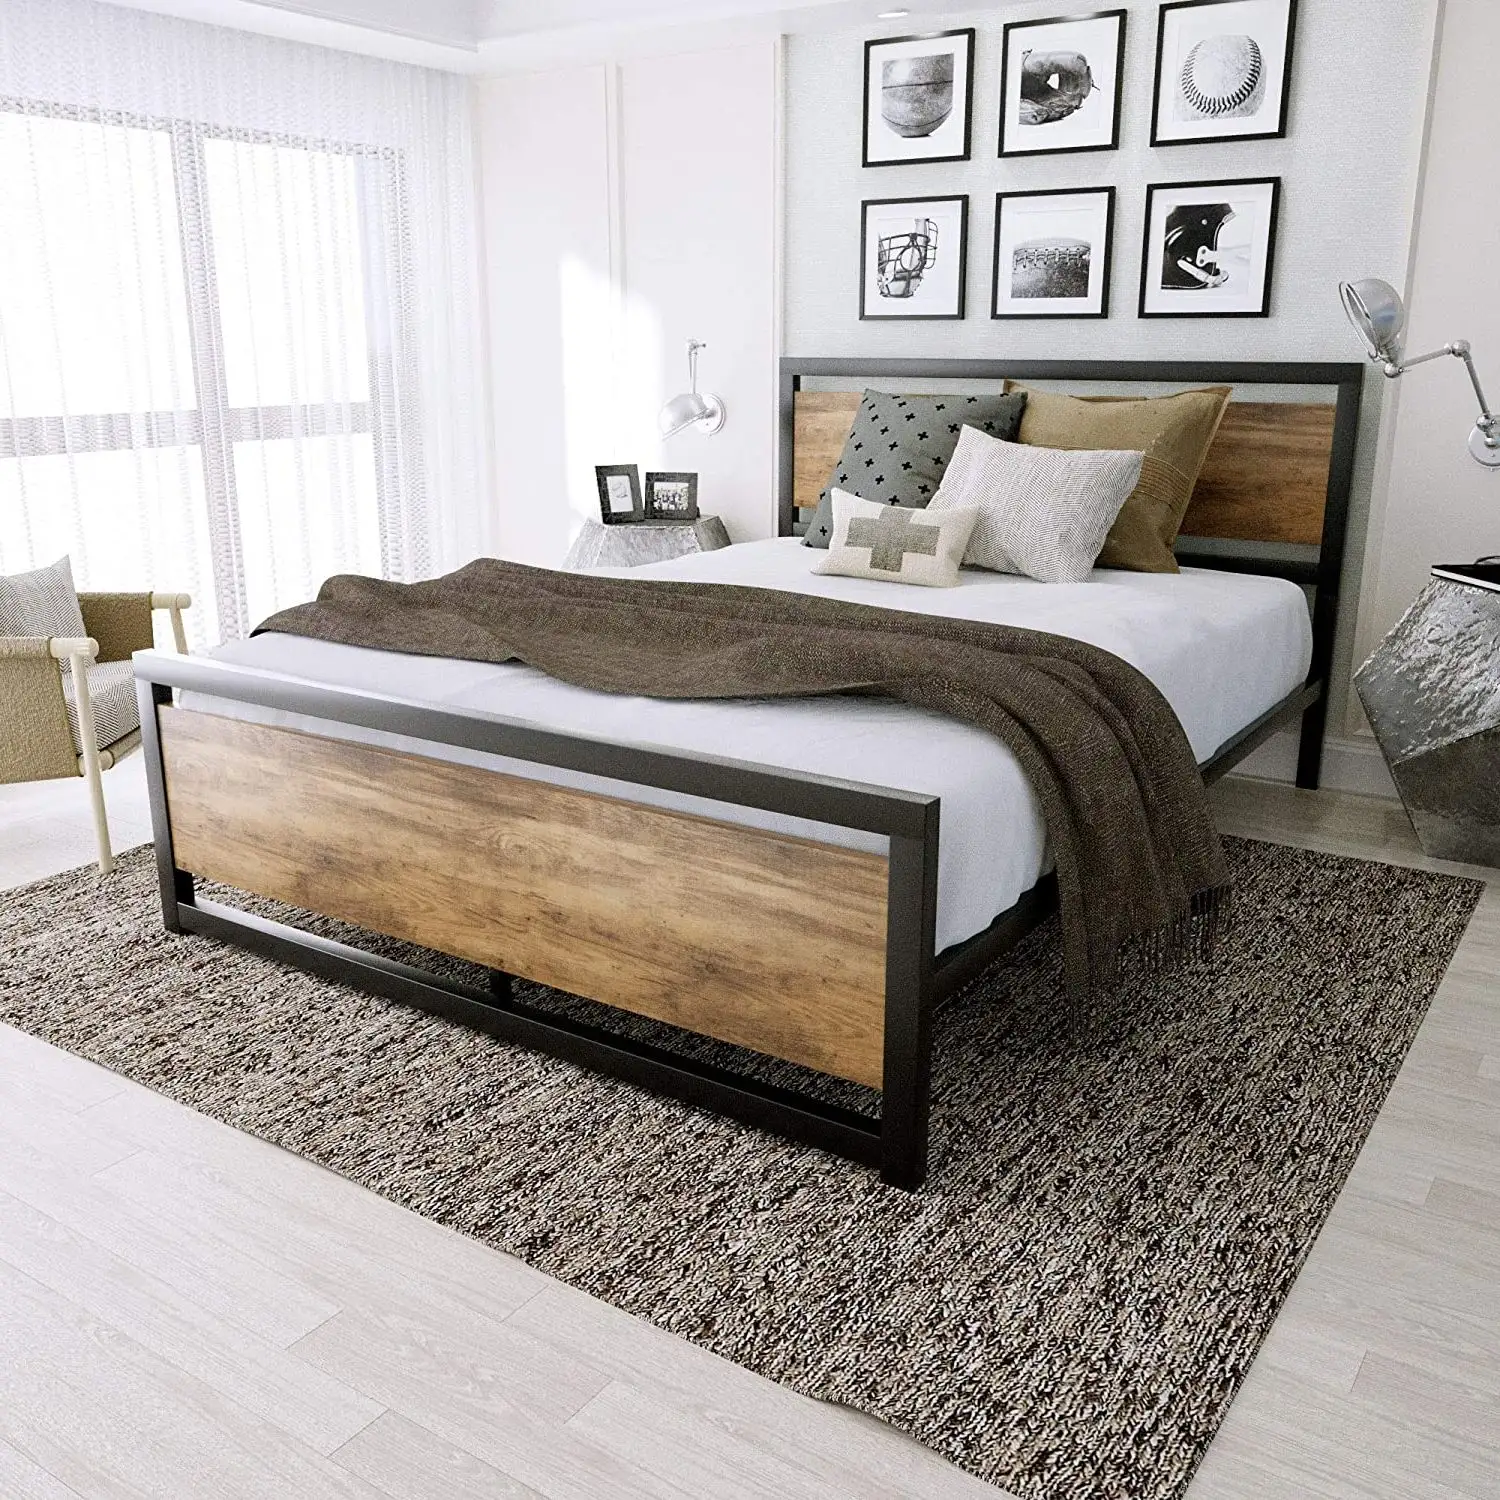 سرير معدني بقاعدة خشبية إسكندنافية وحديثة ، رخيصة الثمن ، بإطار كبير الحجم ، للفنادق